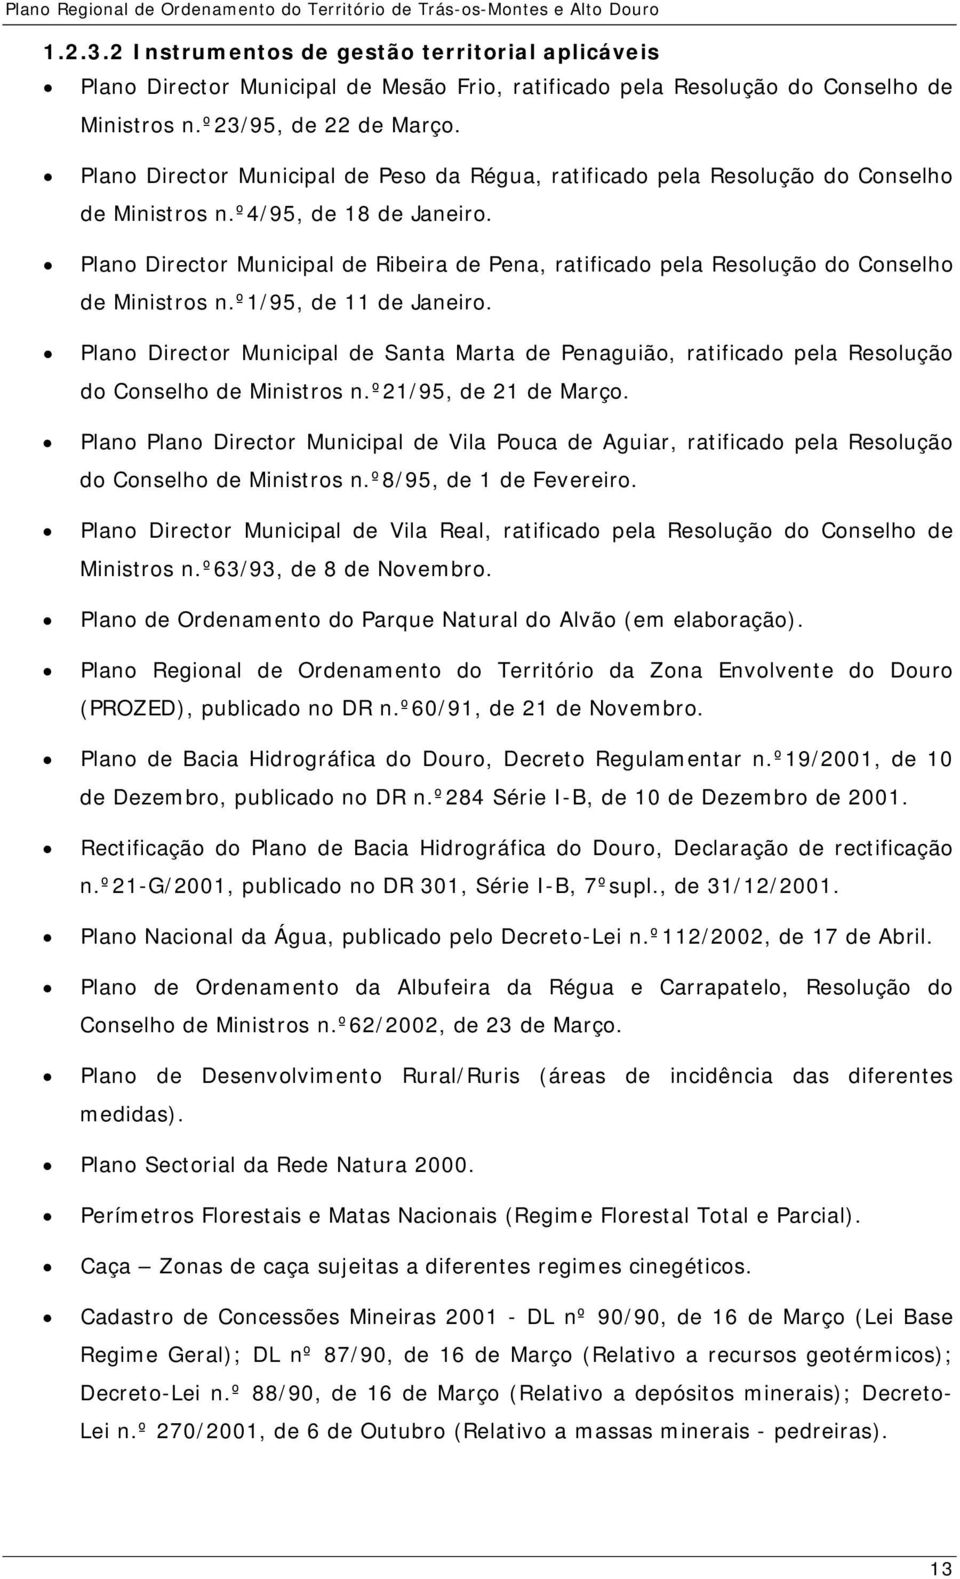 Plano Director Municipal de Ribeira de Pena, ratificado pela Resolução do Conselho de Ministros n.º1/95, de 11 de Janeiro.